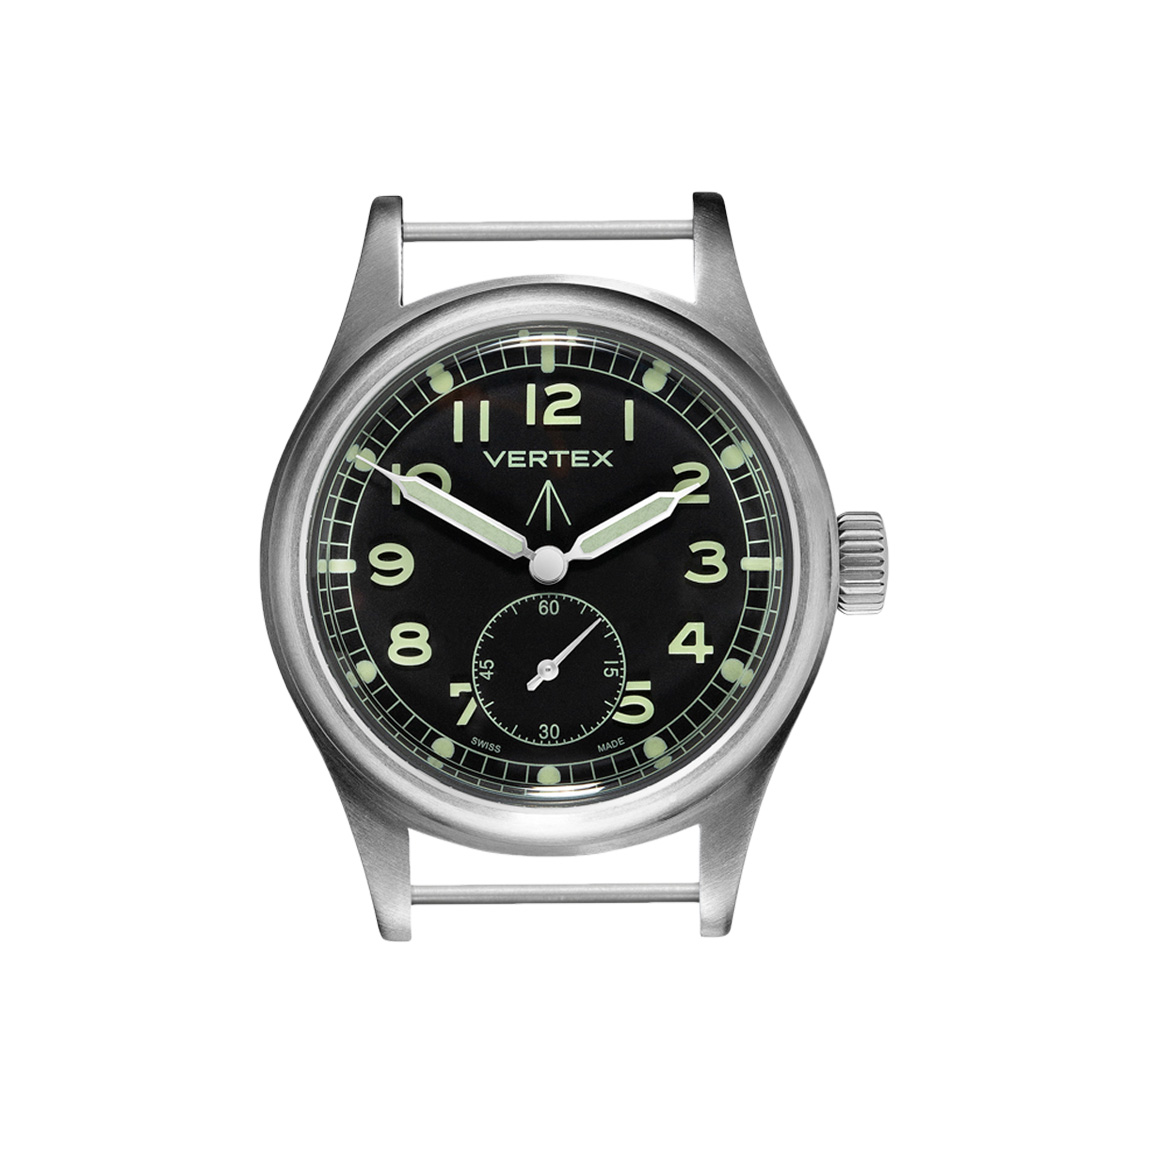 Vertex Watches – The Vertex Watch Company